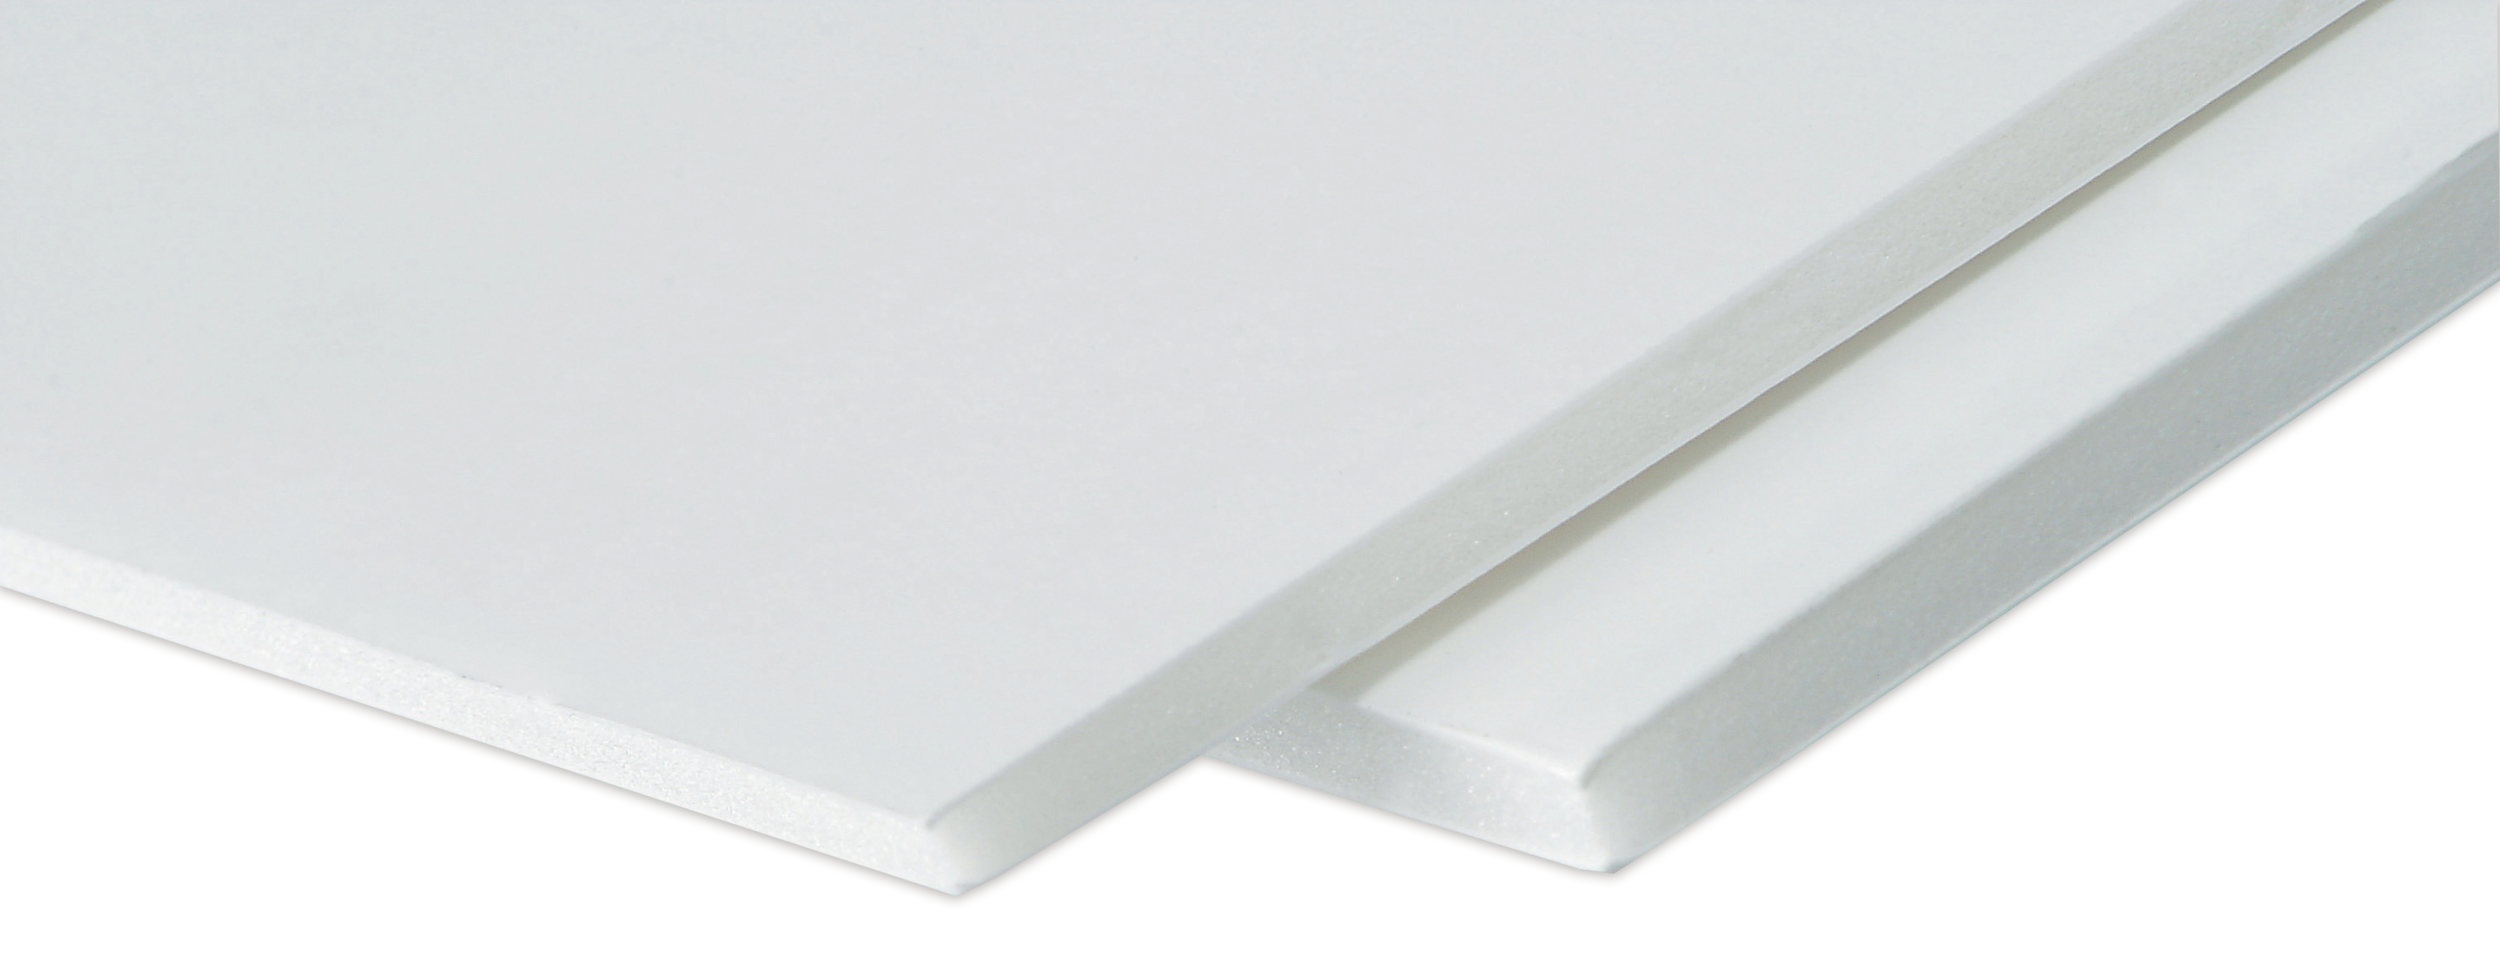 Readi-Board White Foam Boards, 20x30 in.